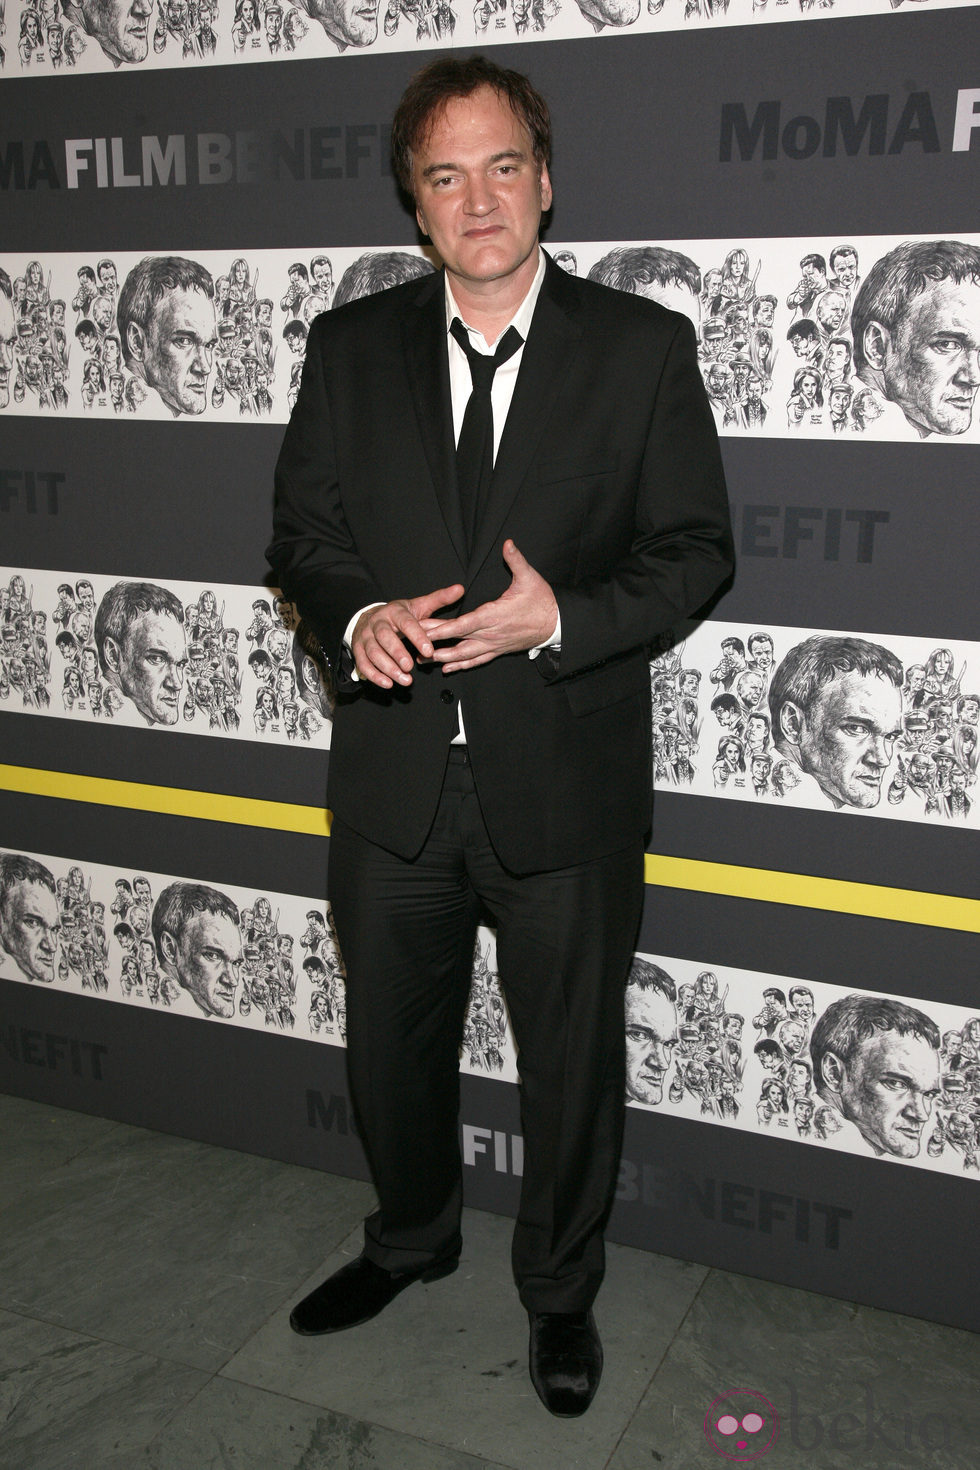 Quentin Tarantino, homenajeado por el Museo de Arte Moderno de Nueva York